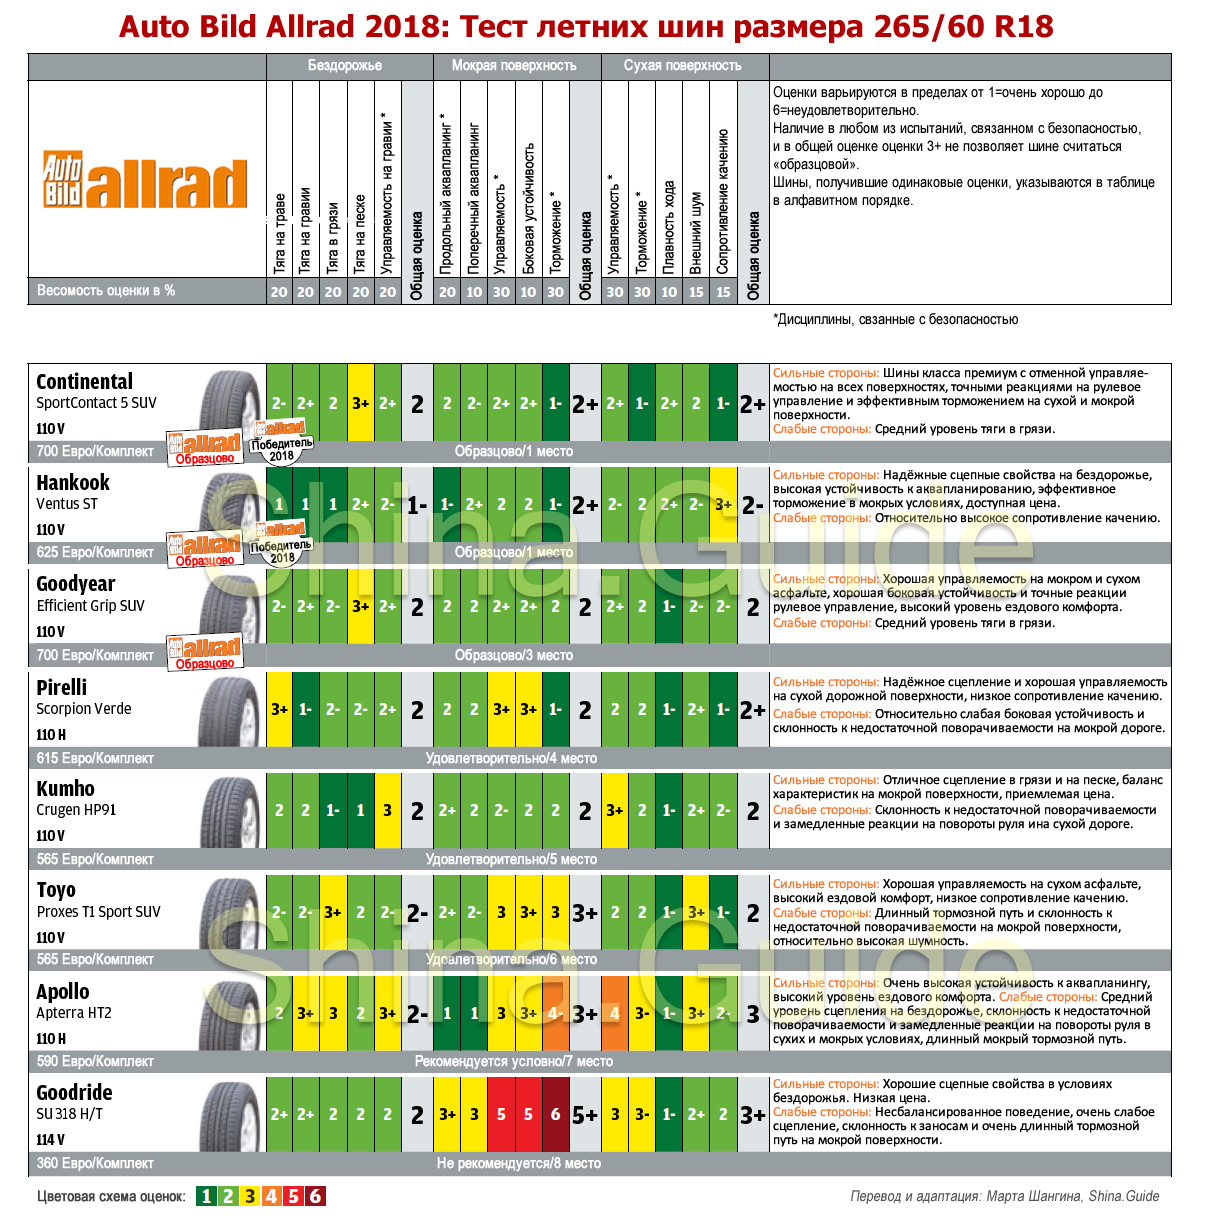 Сводная таблица результатов теста AutoBild Allrad 2018 года летних шин для внедорожников (265/60 R18)